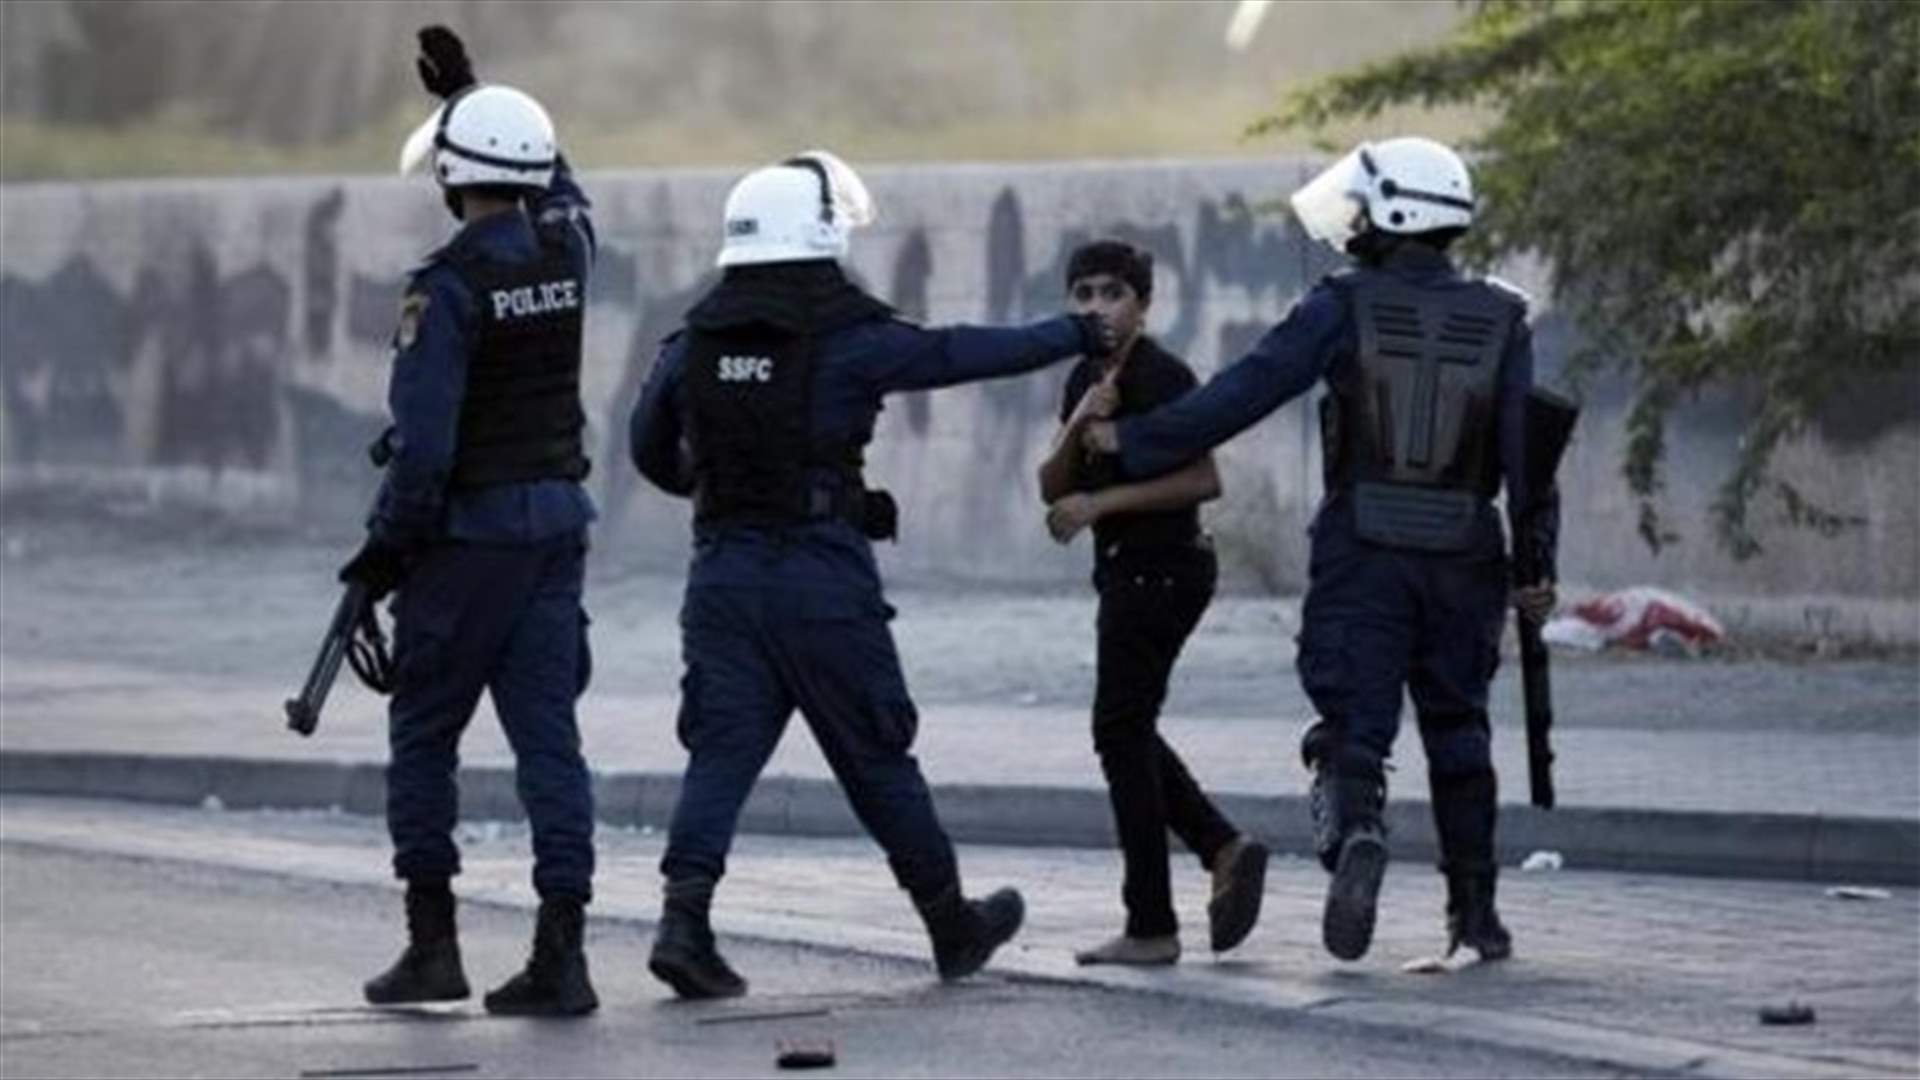 Woman dies, children hurt in Bahrain bomb blast - police